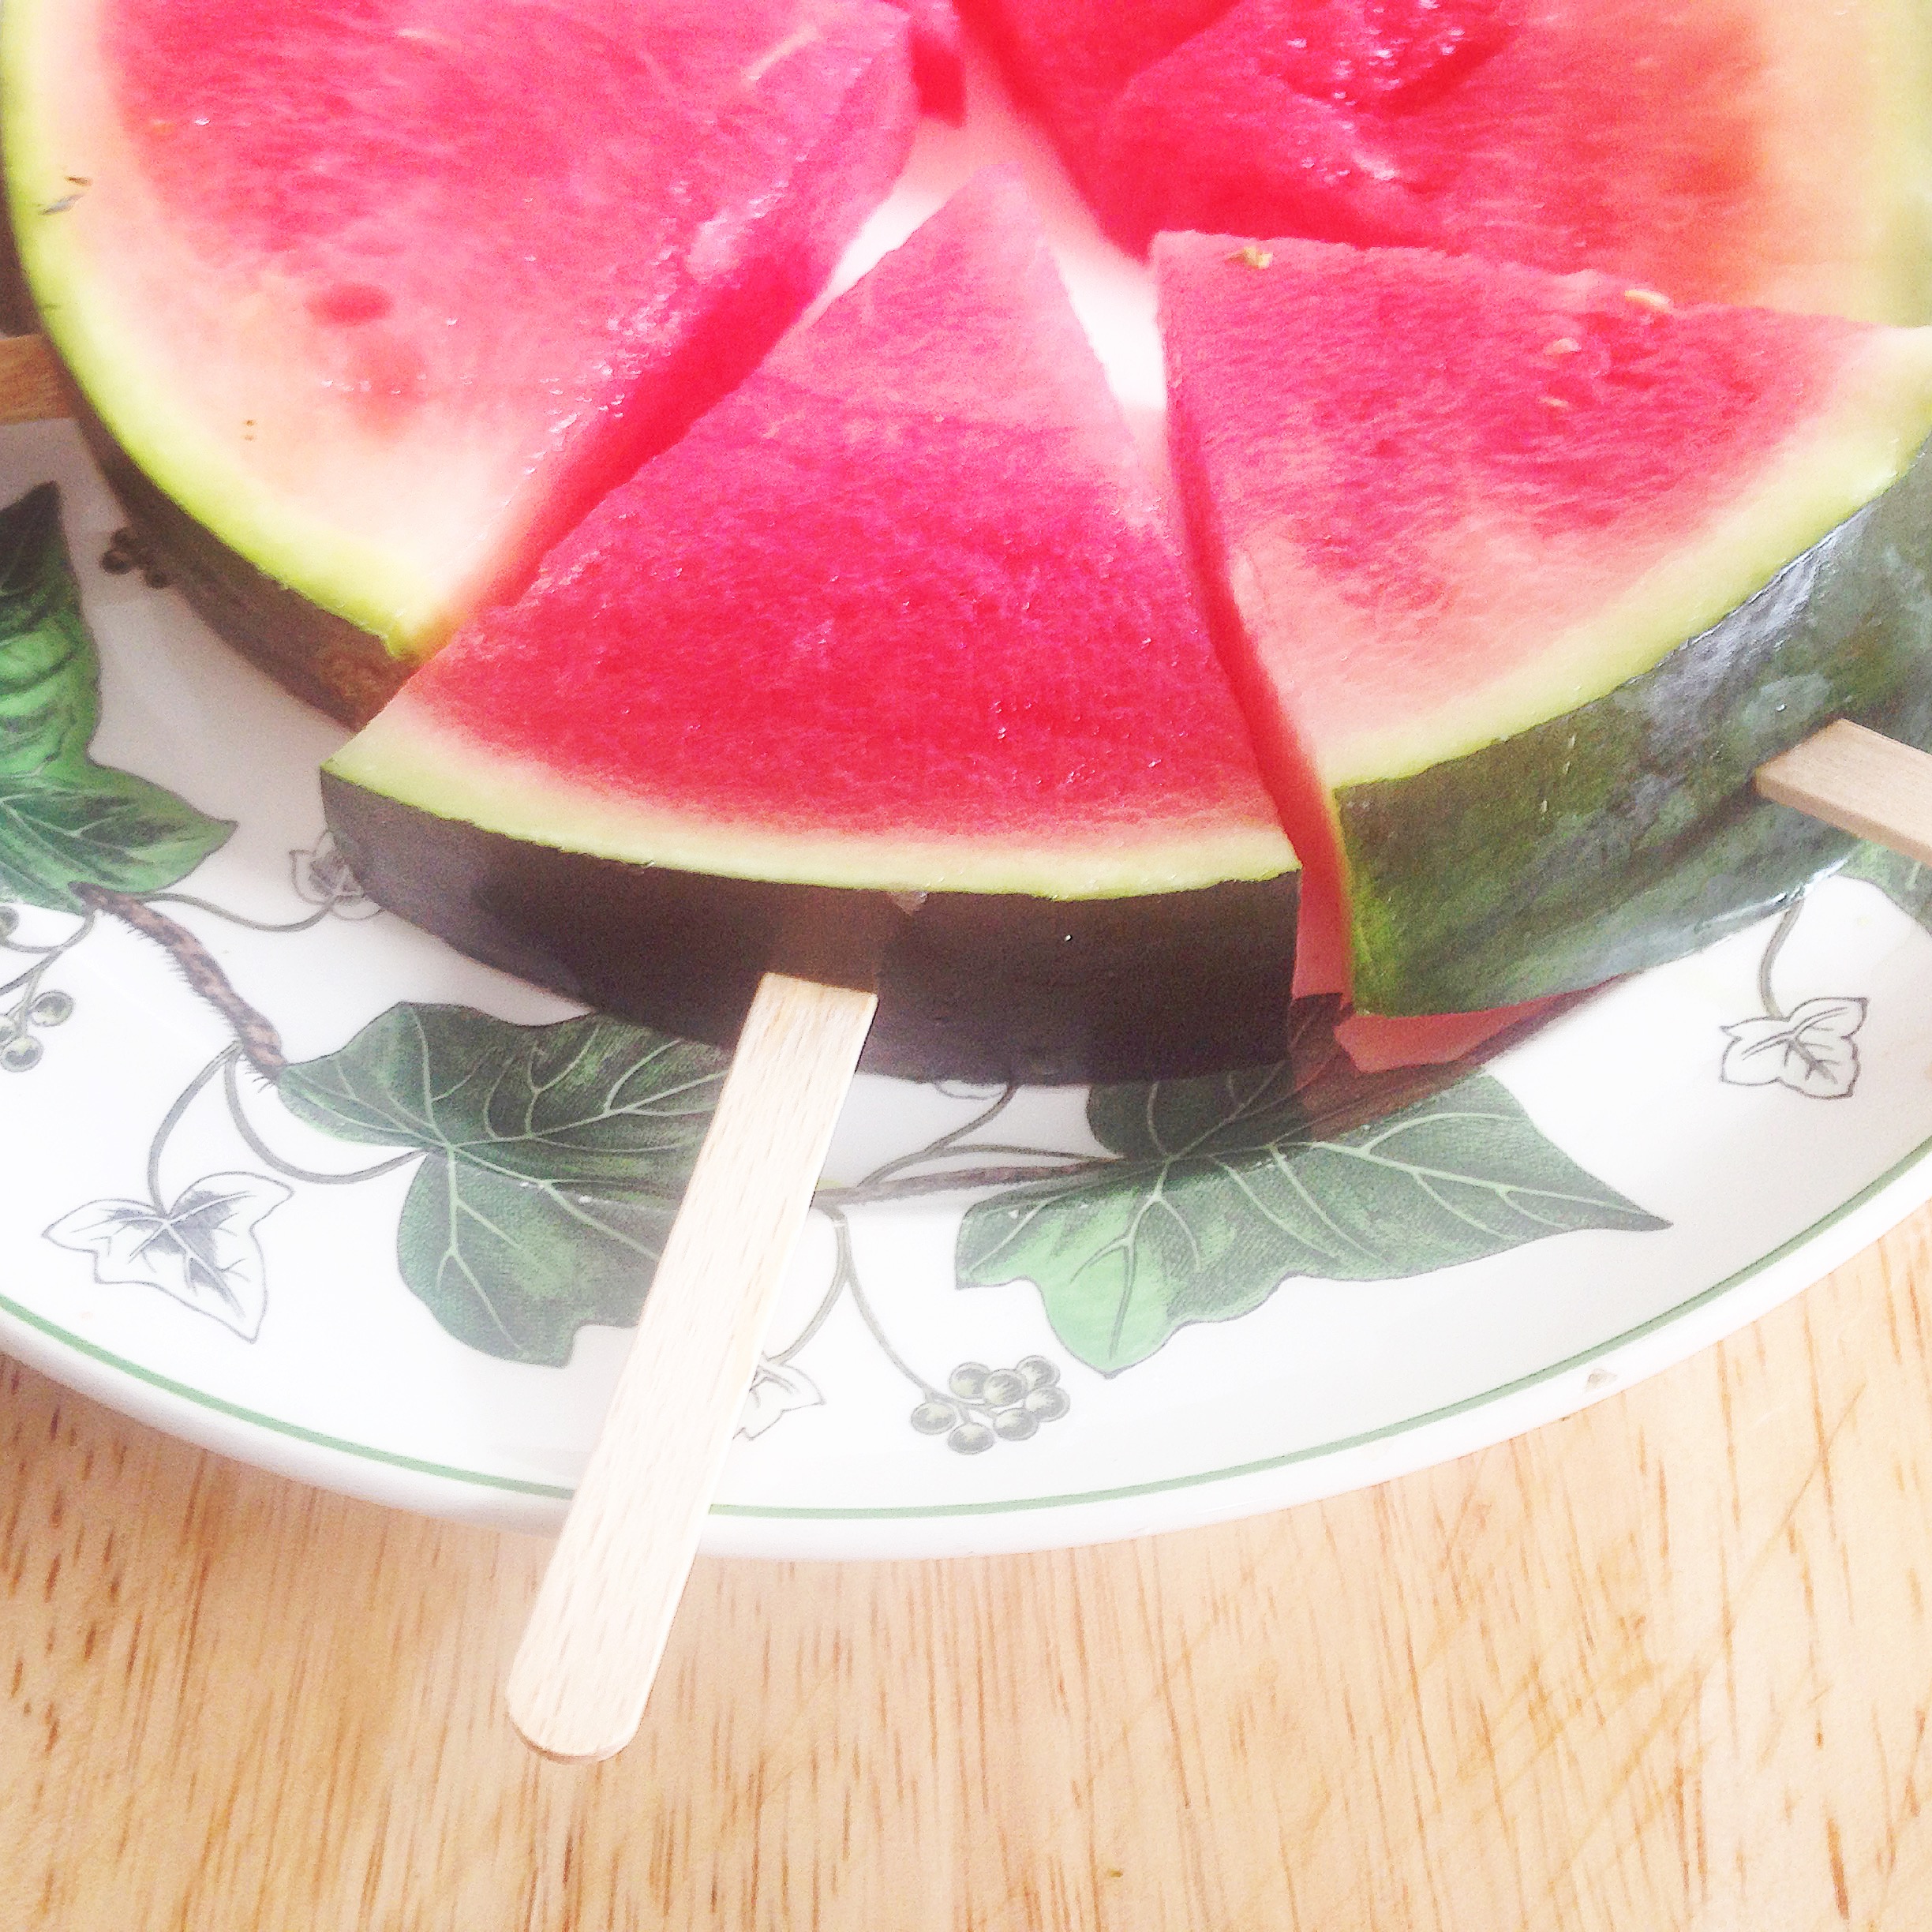 Sommer Snack - Snack für heiße Sommertage - Melone am Stiel, Meloneneis, Snacks für Kinder,